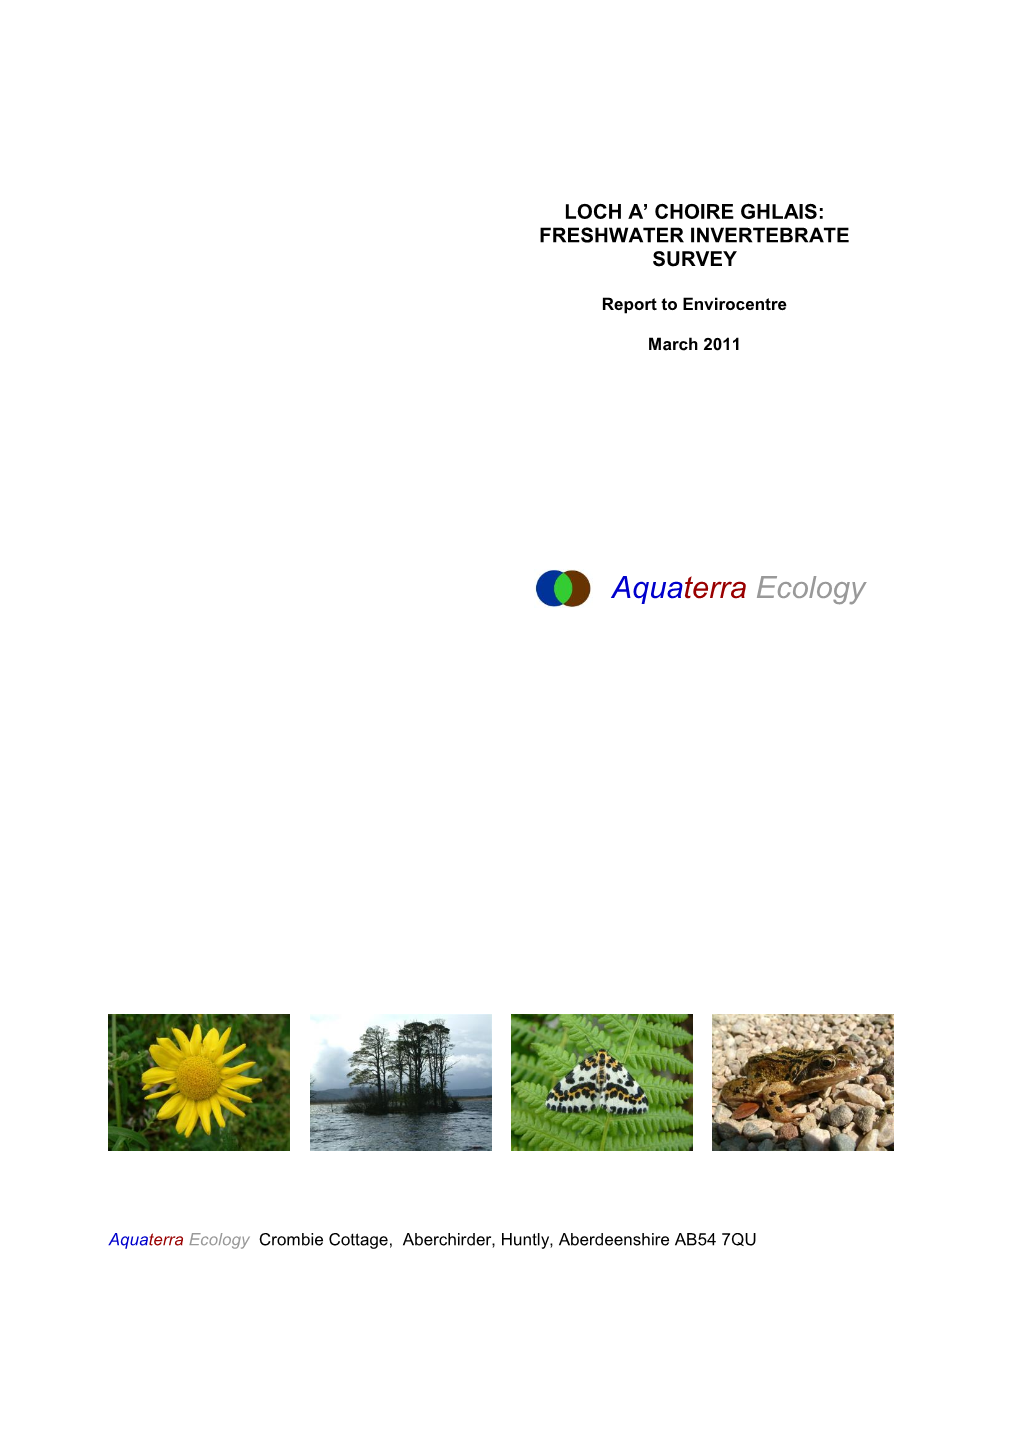 Aquaterra Ecology